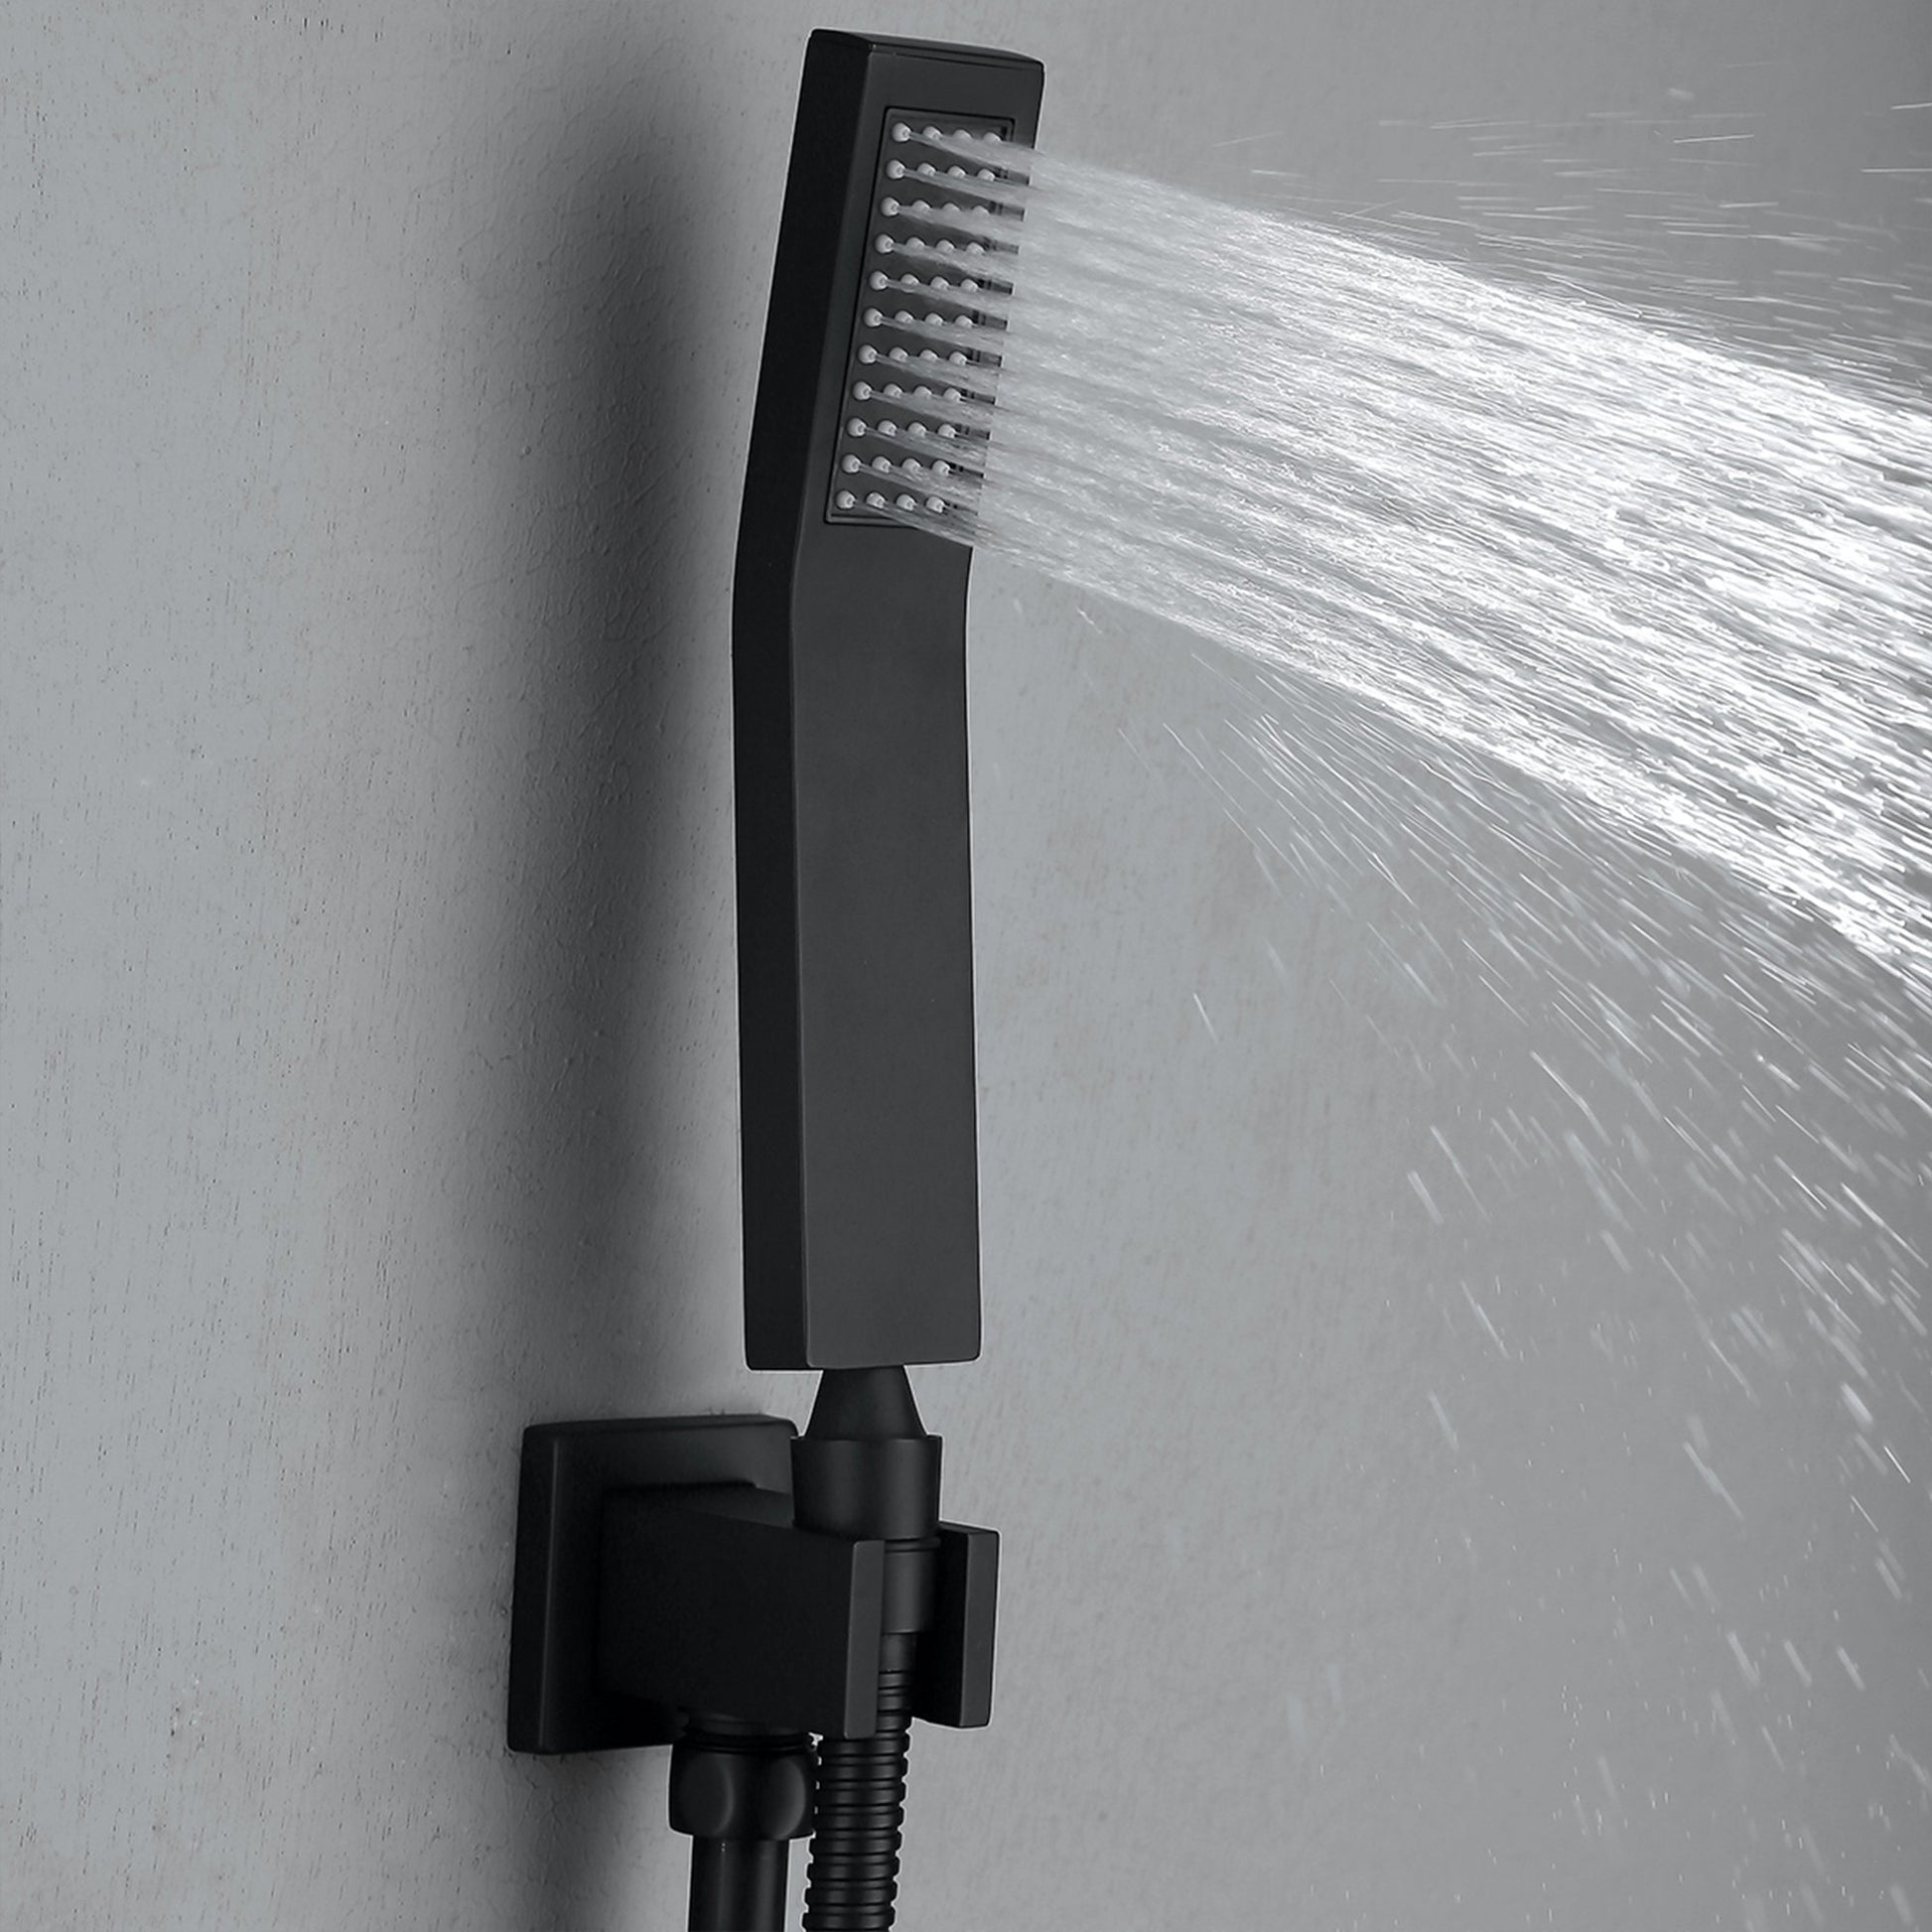 1-Spray Pattern 2 GPM 10 in. Wall Mount Dual Shower Heads in Matte Black - Alipuinc